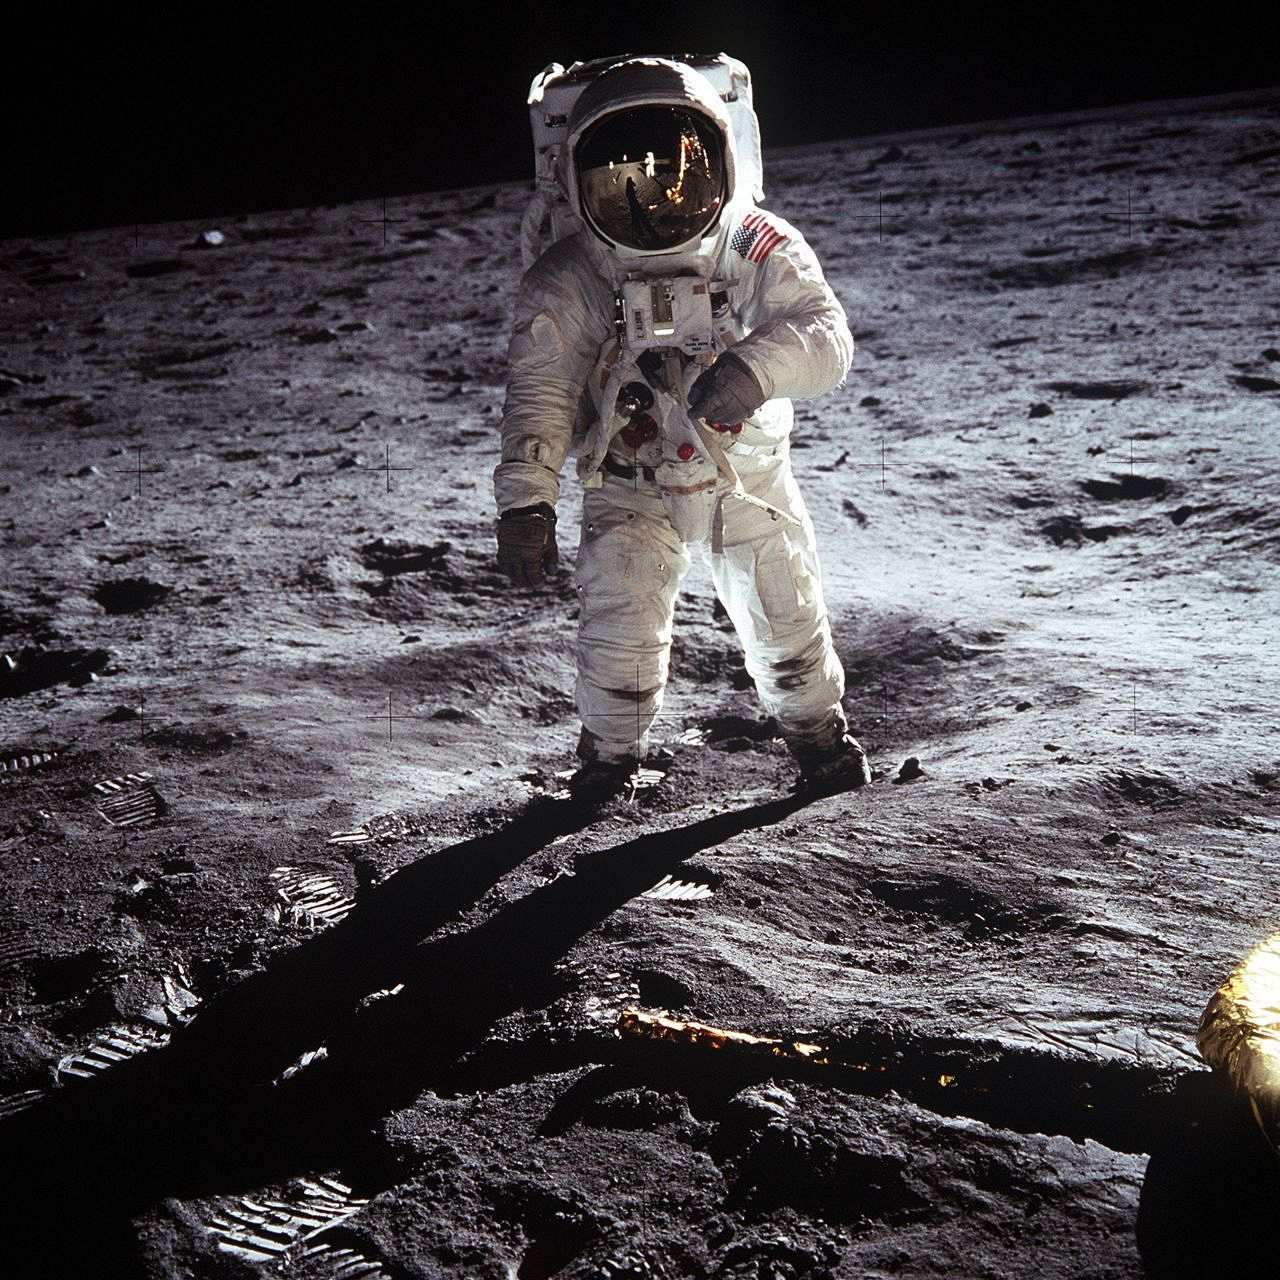 Buzz Aldrin geht auf der unebenen Mondoberfläche. Er trägt einen weißen Raumanzug mit USA-Flagge auf der linken Schulter und mit einem nahezu kugelförmigen Helm.